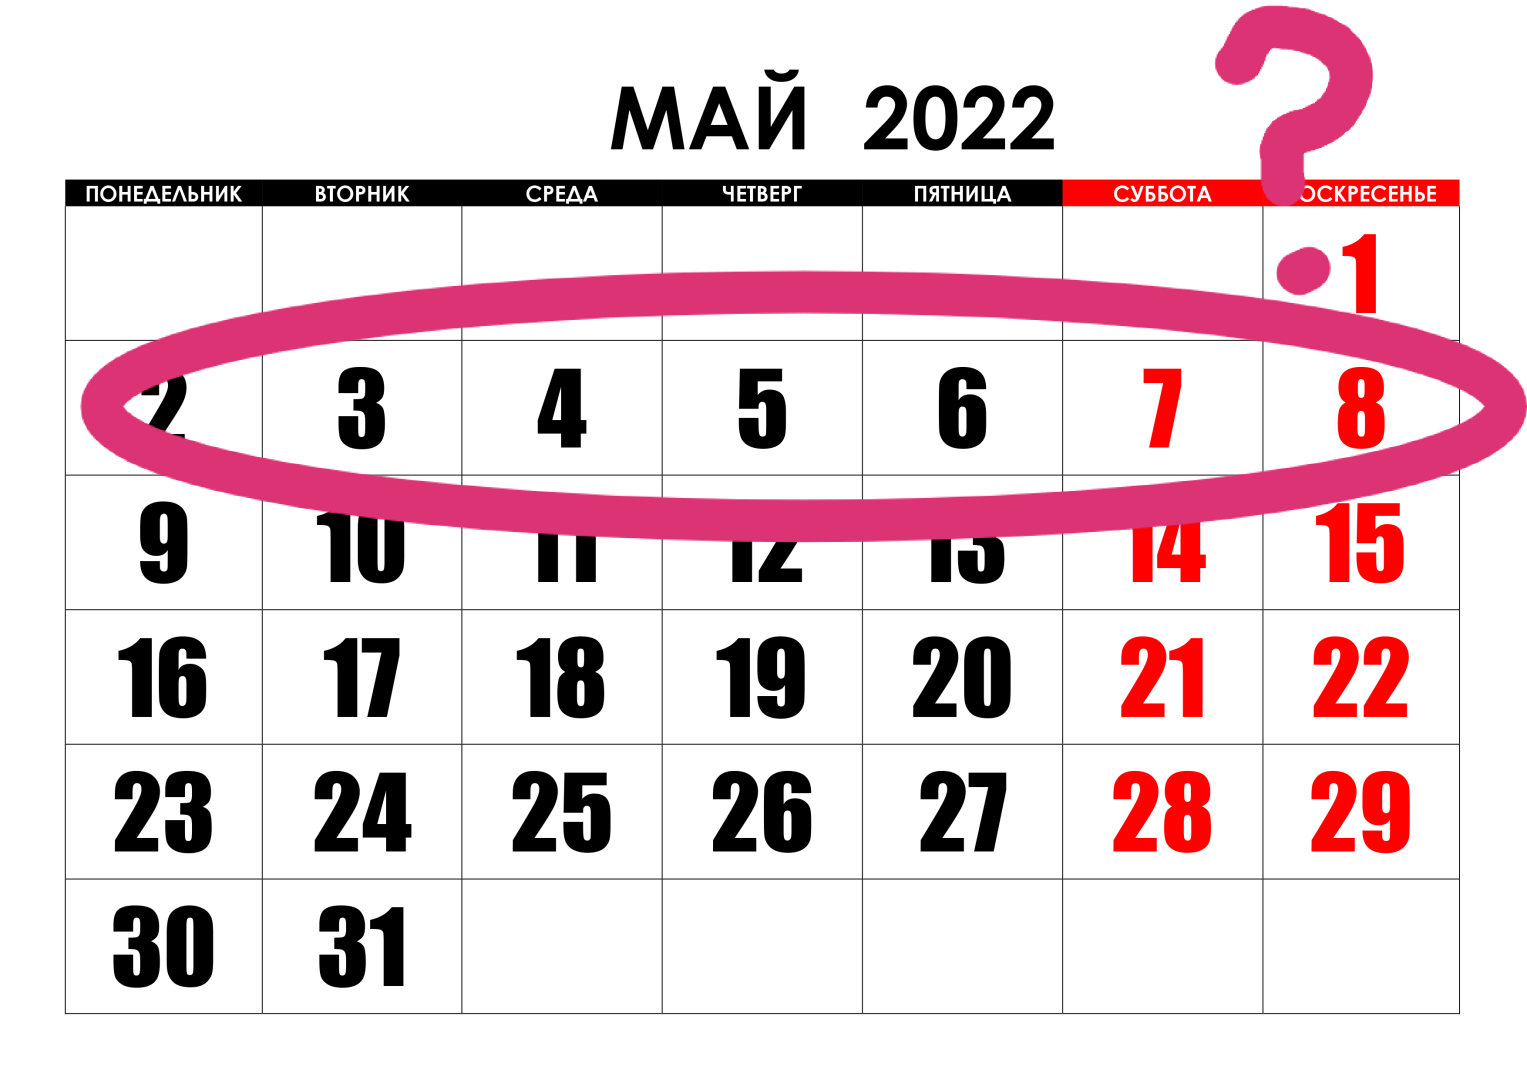 Сколько дней россия отдыхает на майские праздники. Майские праздники в 2022 году. Праздничные дни в мае 2022. Календарь праздников на май. Майские выходные в 2022 году.